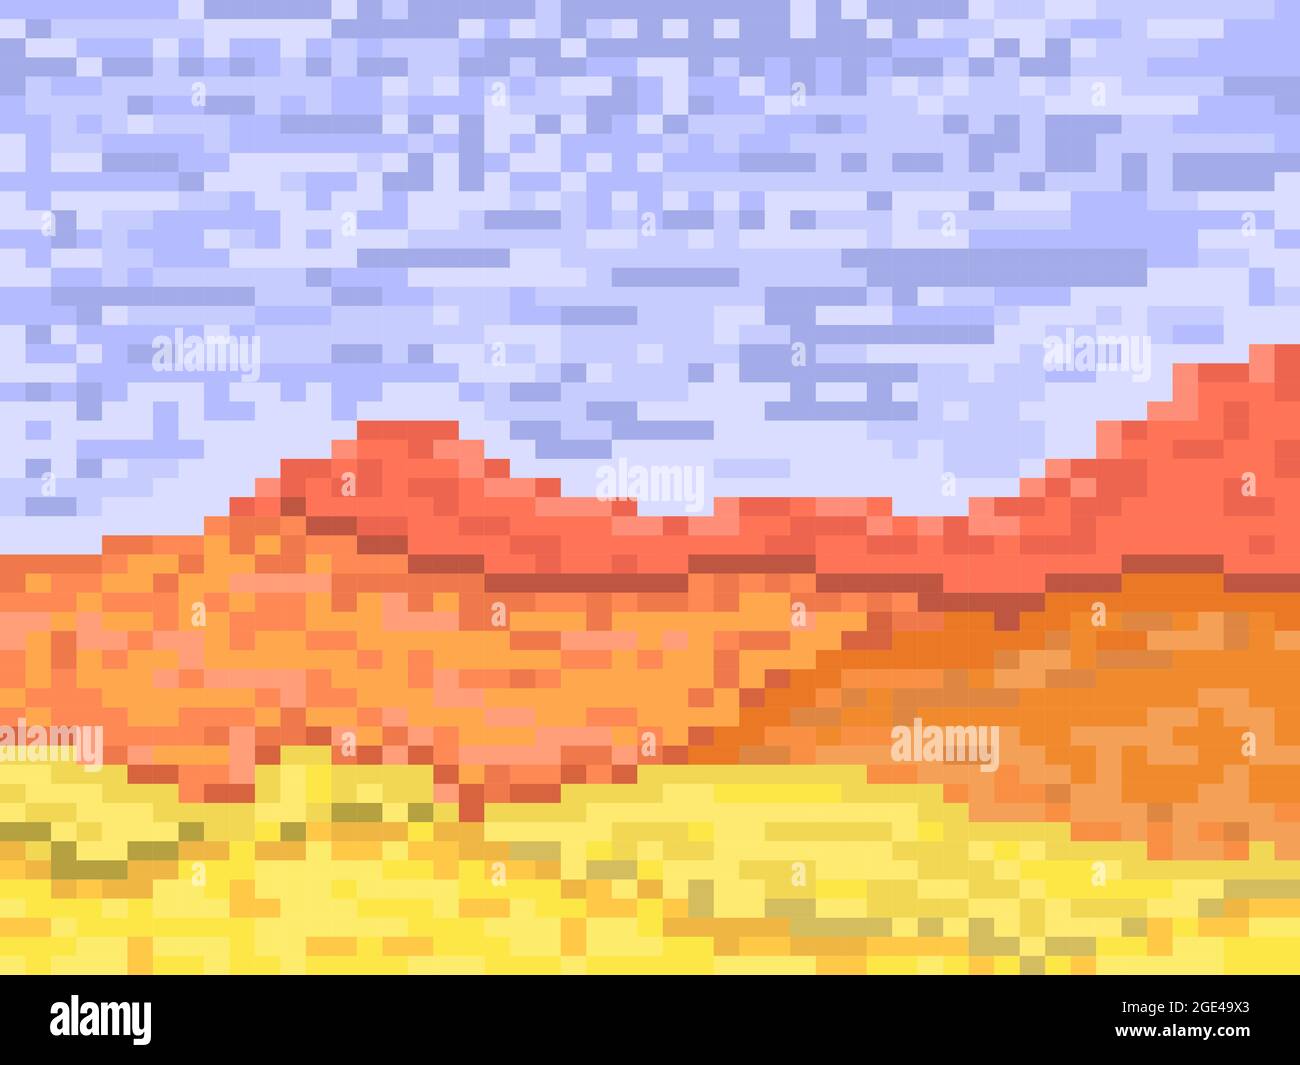 Phong cảnh sa mạc pixel với cồn cát chắc chắn sẽ làm say đắm những người yêu thích trò chơi video cổ điển. Với đồ họa 8-bit độc đáo, bạn sẽ được trải nghiệm một cảm giác mới lạ khi khám phá thế giới mở rộng trong trò chơi video cổ điển này. Hãy tận hưởng hành trình khám phá sa mạc của bạn ngay bây giờ!